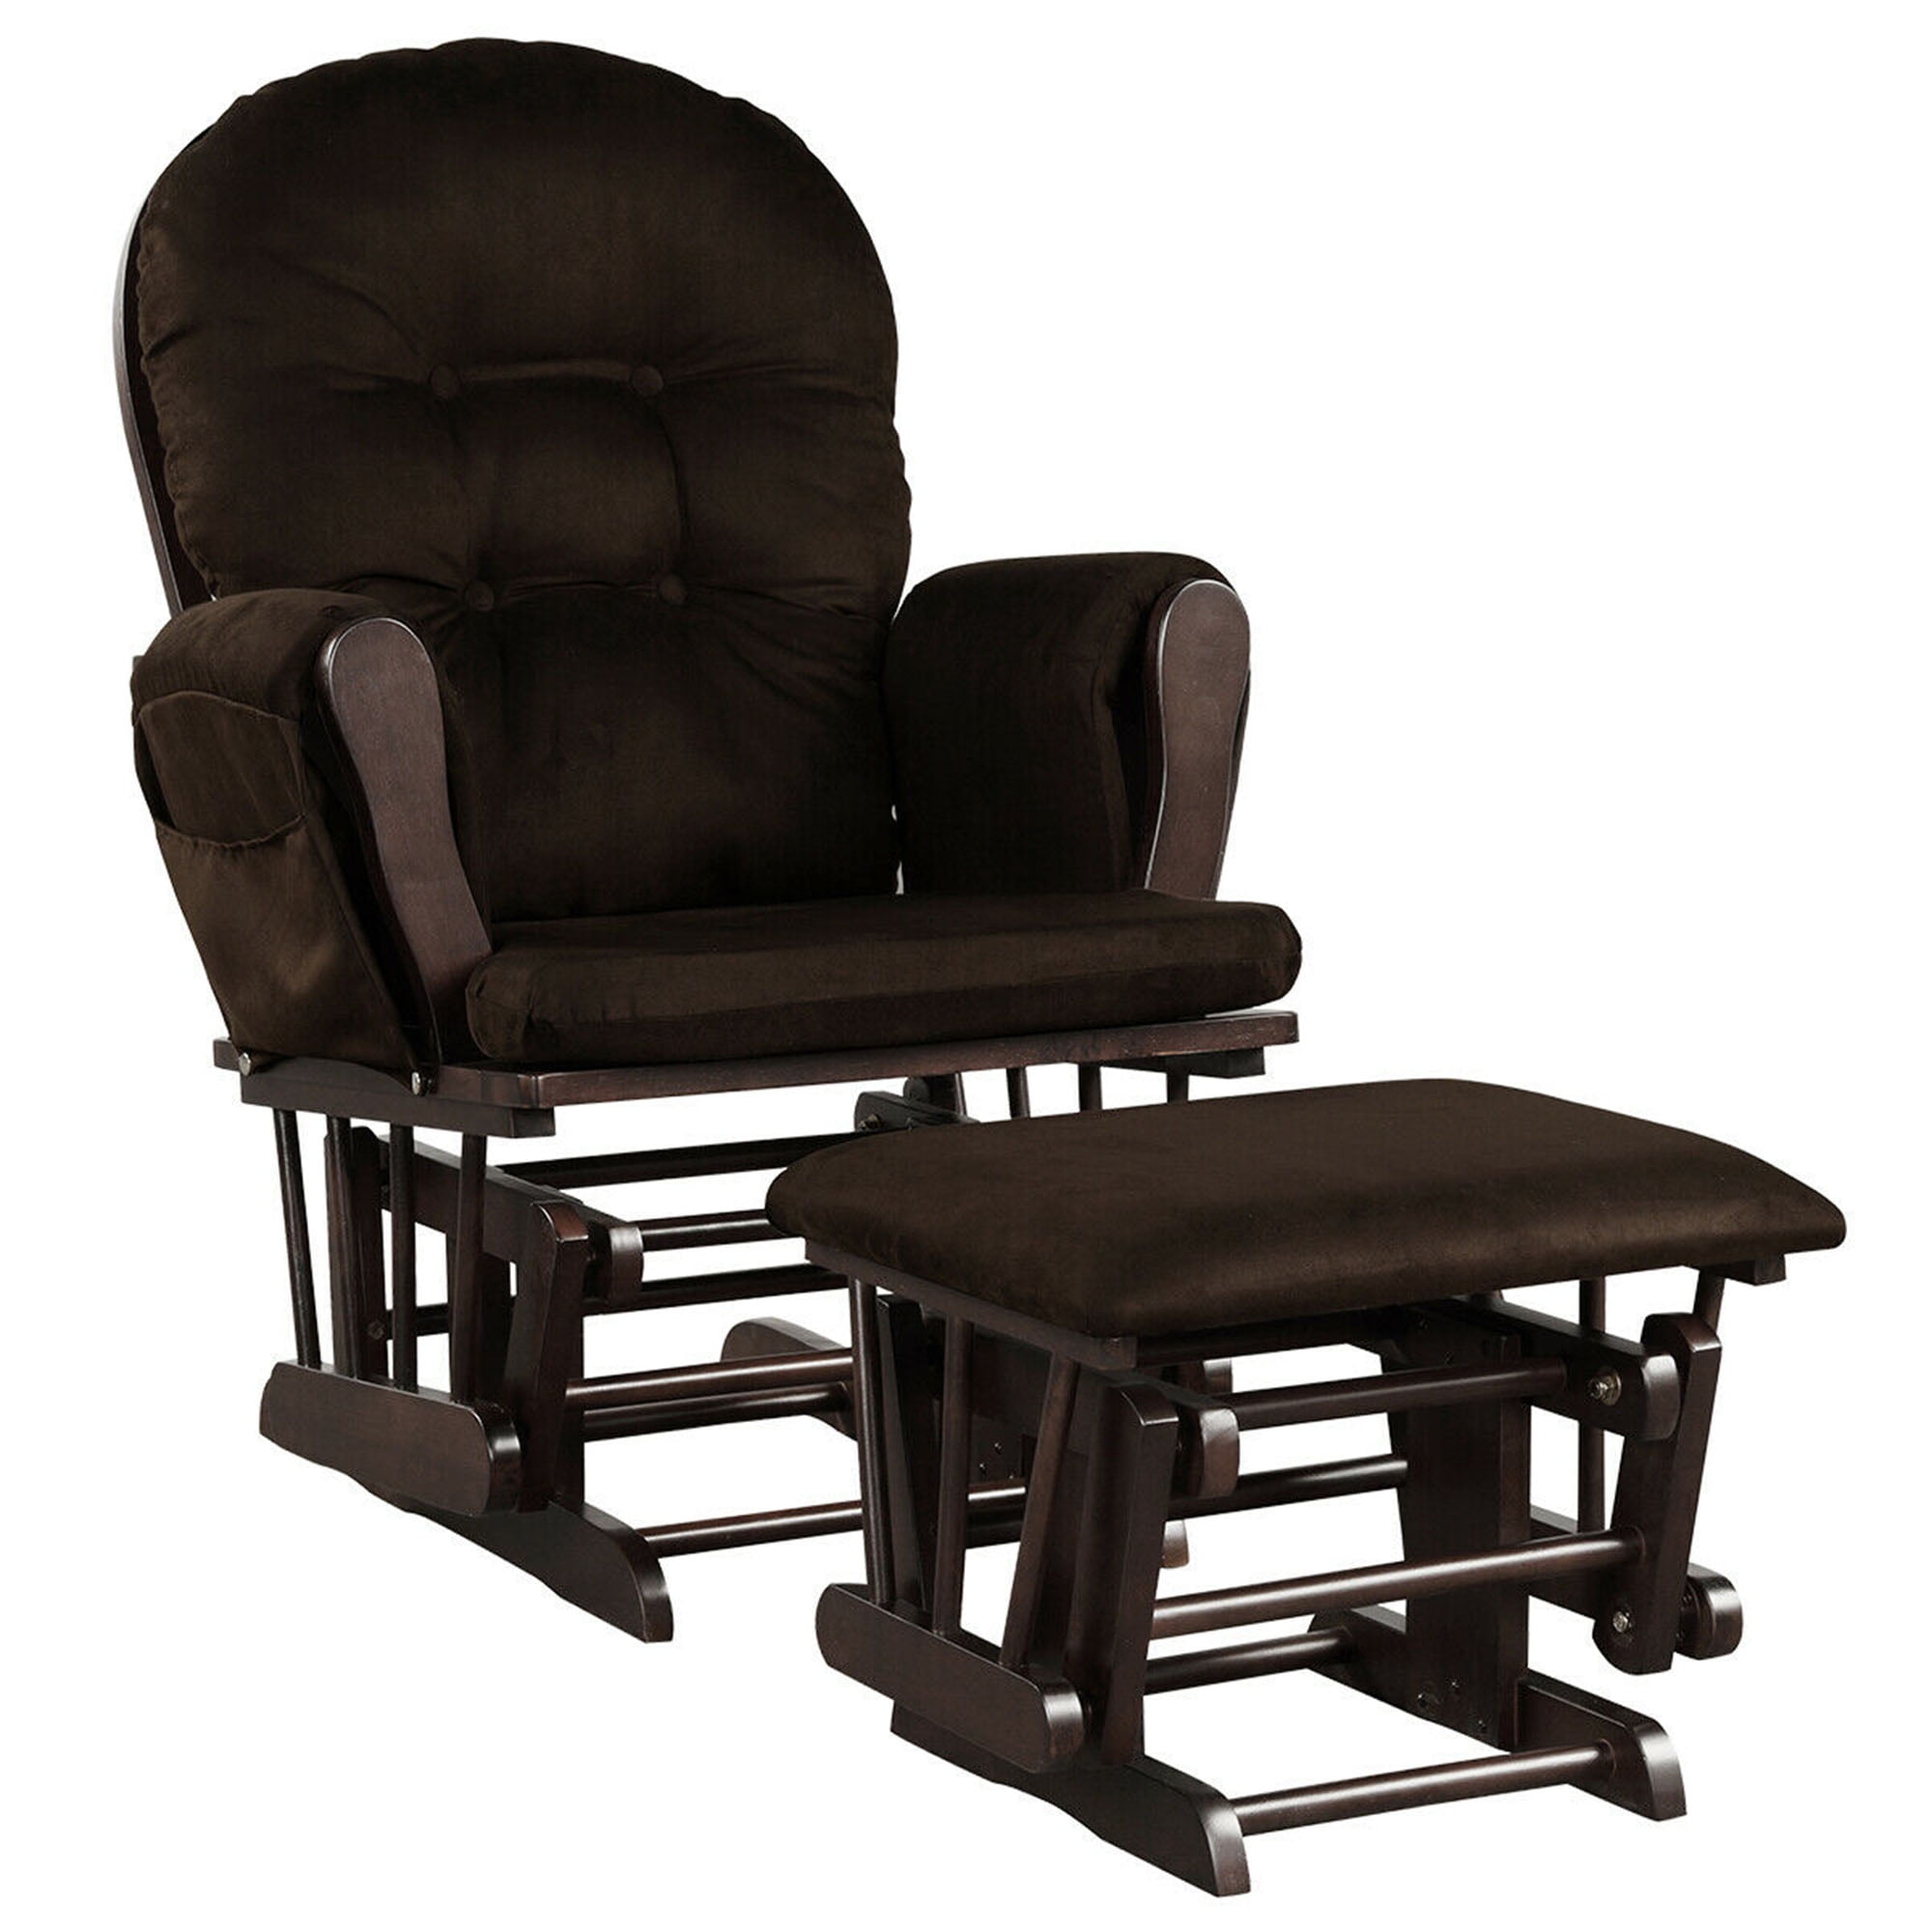 Gymax Baby Nursery Relax Rocker Rocking Chair Glider & Ottoman Set w\/
Cushion - Walmart.com